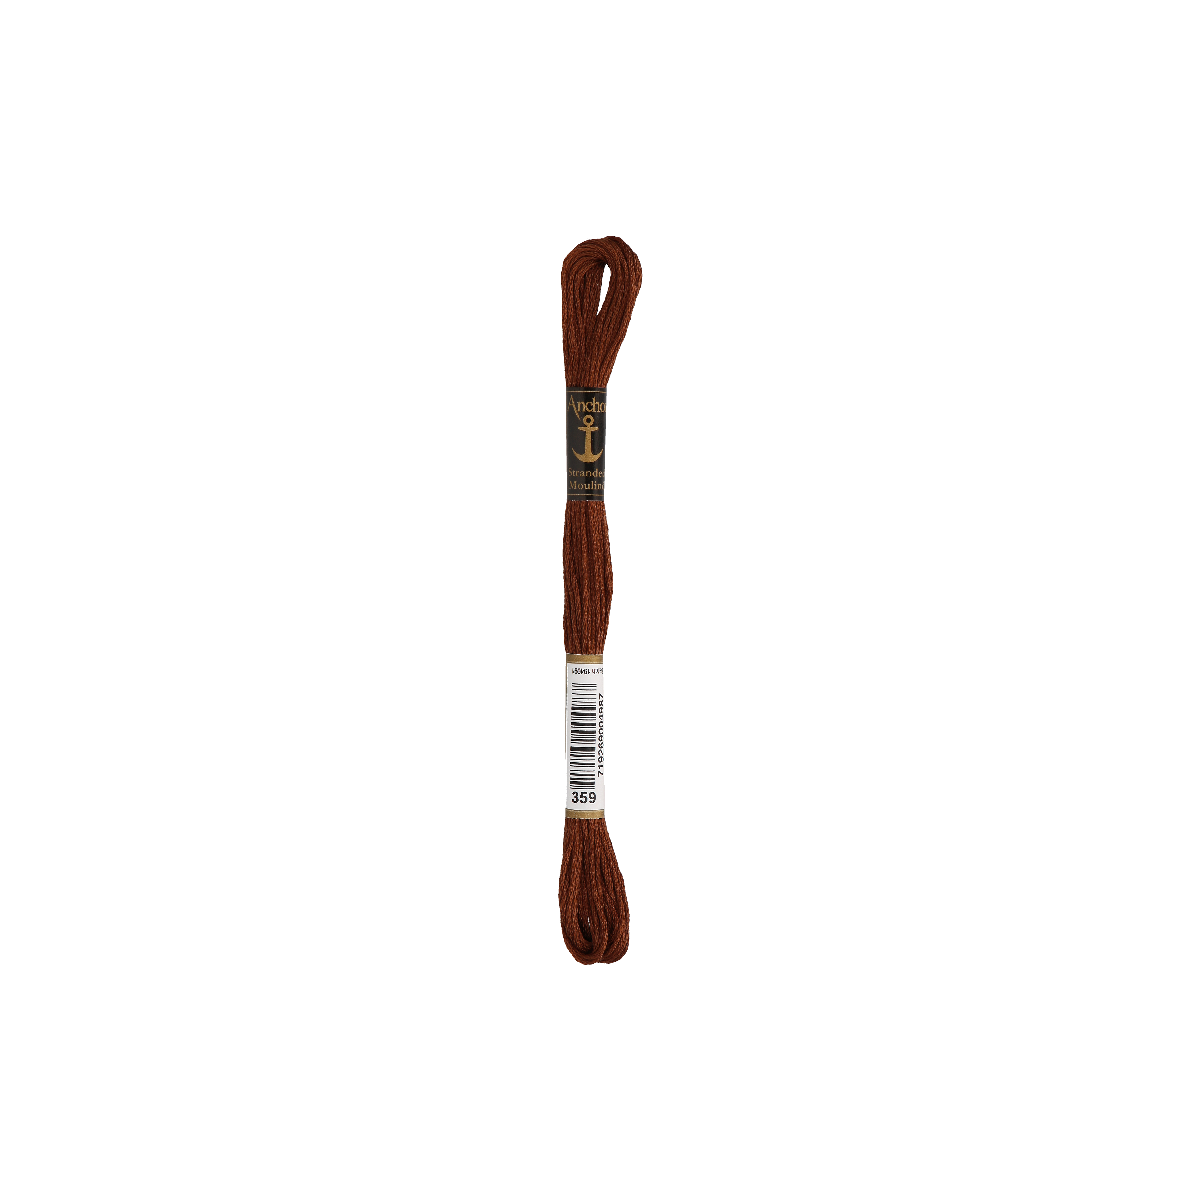 Anchor Sticktwist 8m, marrone, cotone, colore 359, 6 fili